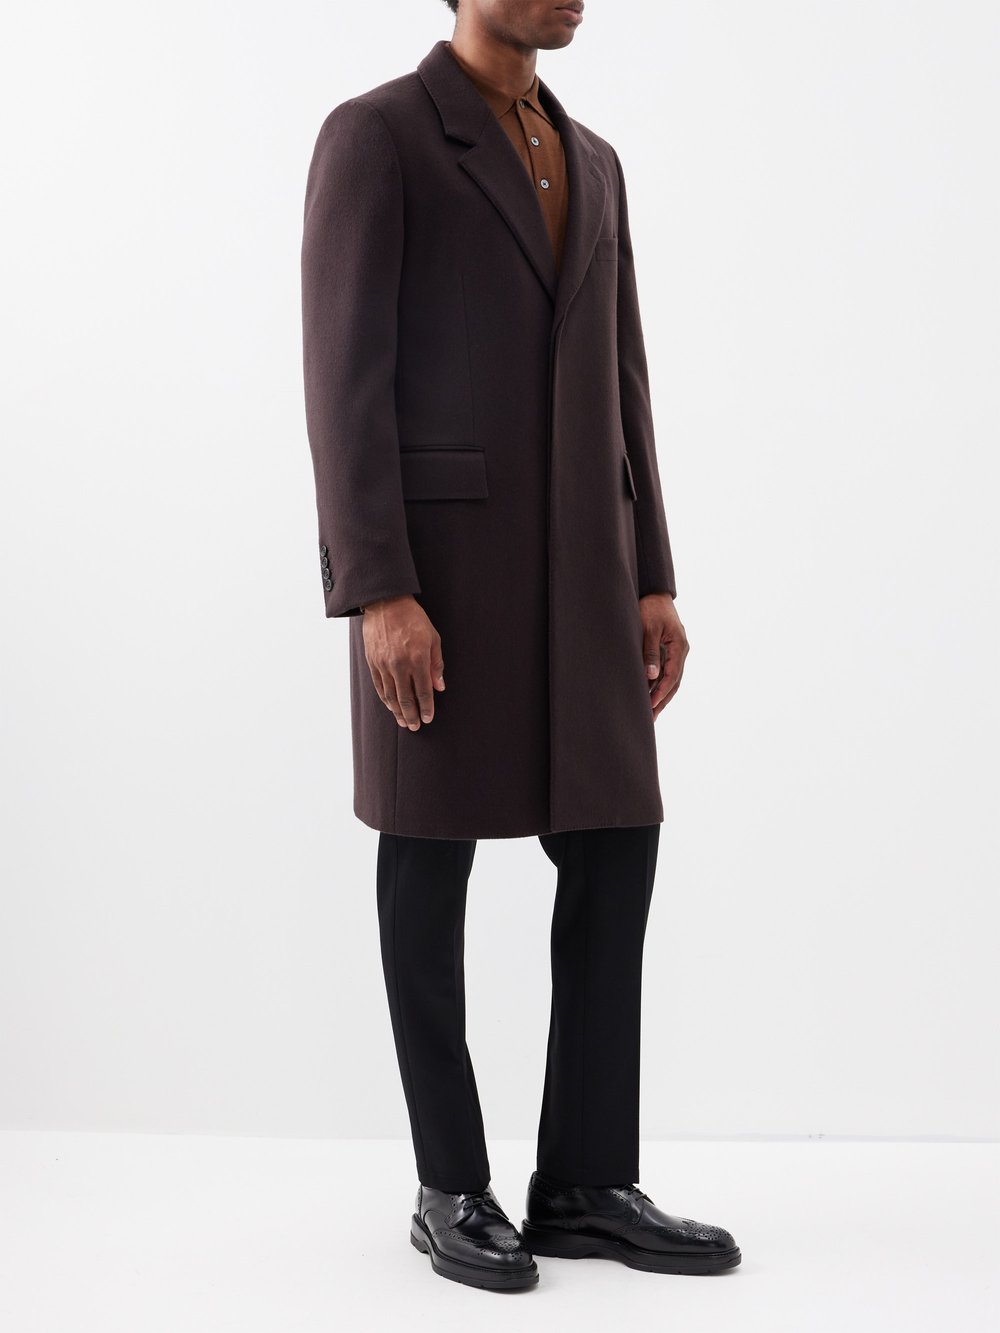 Однобортное кашемировое пальто Dunhill, коричневый женские пуховые пальто с роговыми пуговицами и вышивкой белые пуховые пальто высокого класса черные синие средней длины свободная зимня